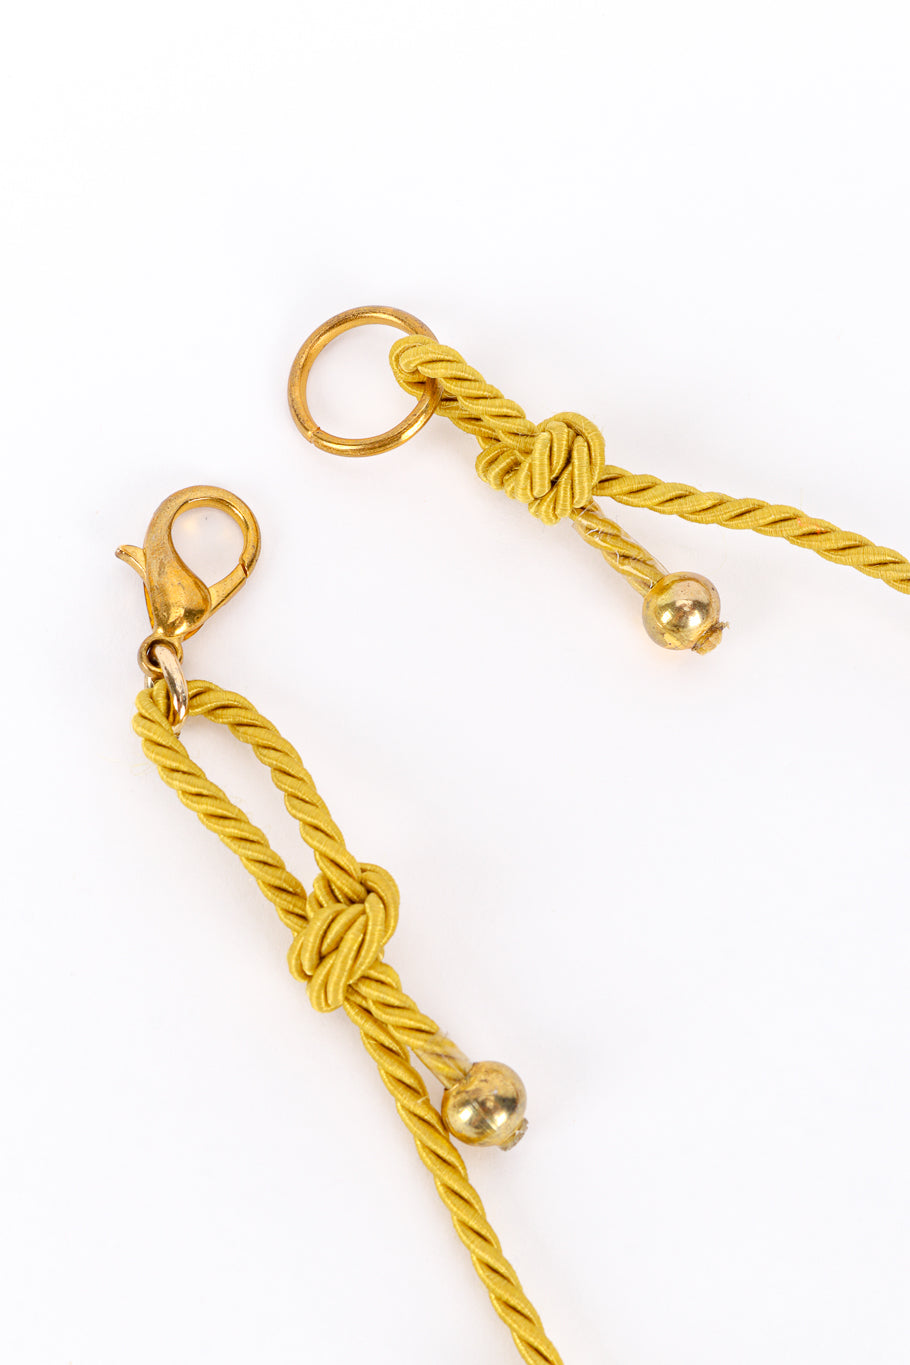 Vintage Tiger's Eye Ceramic Rope Necklace clasp closure @recess la